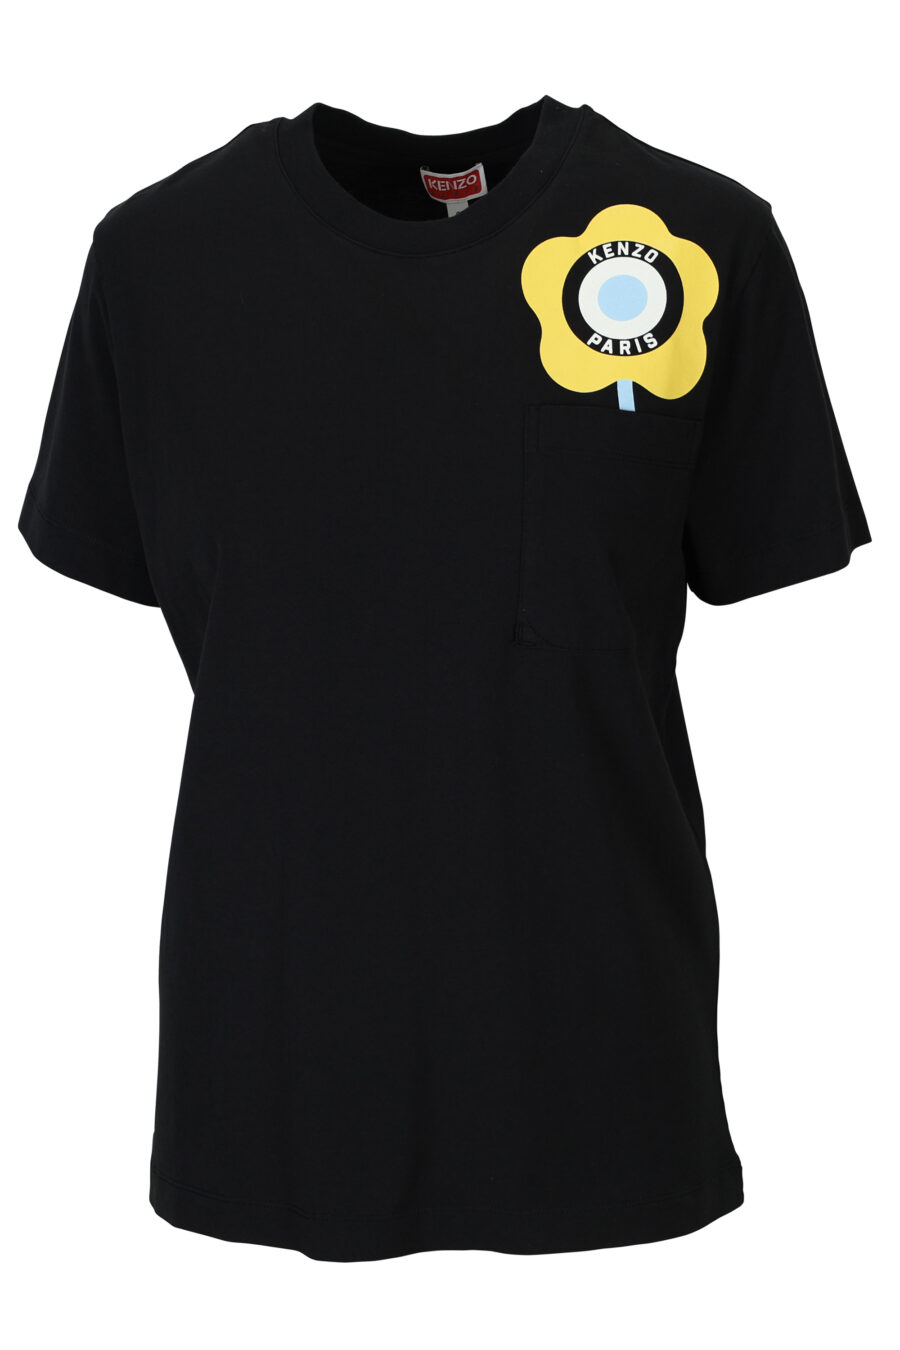 Camiseta negra con logo amarillo "kenzo target" - 3612230510654